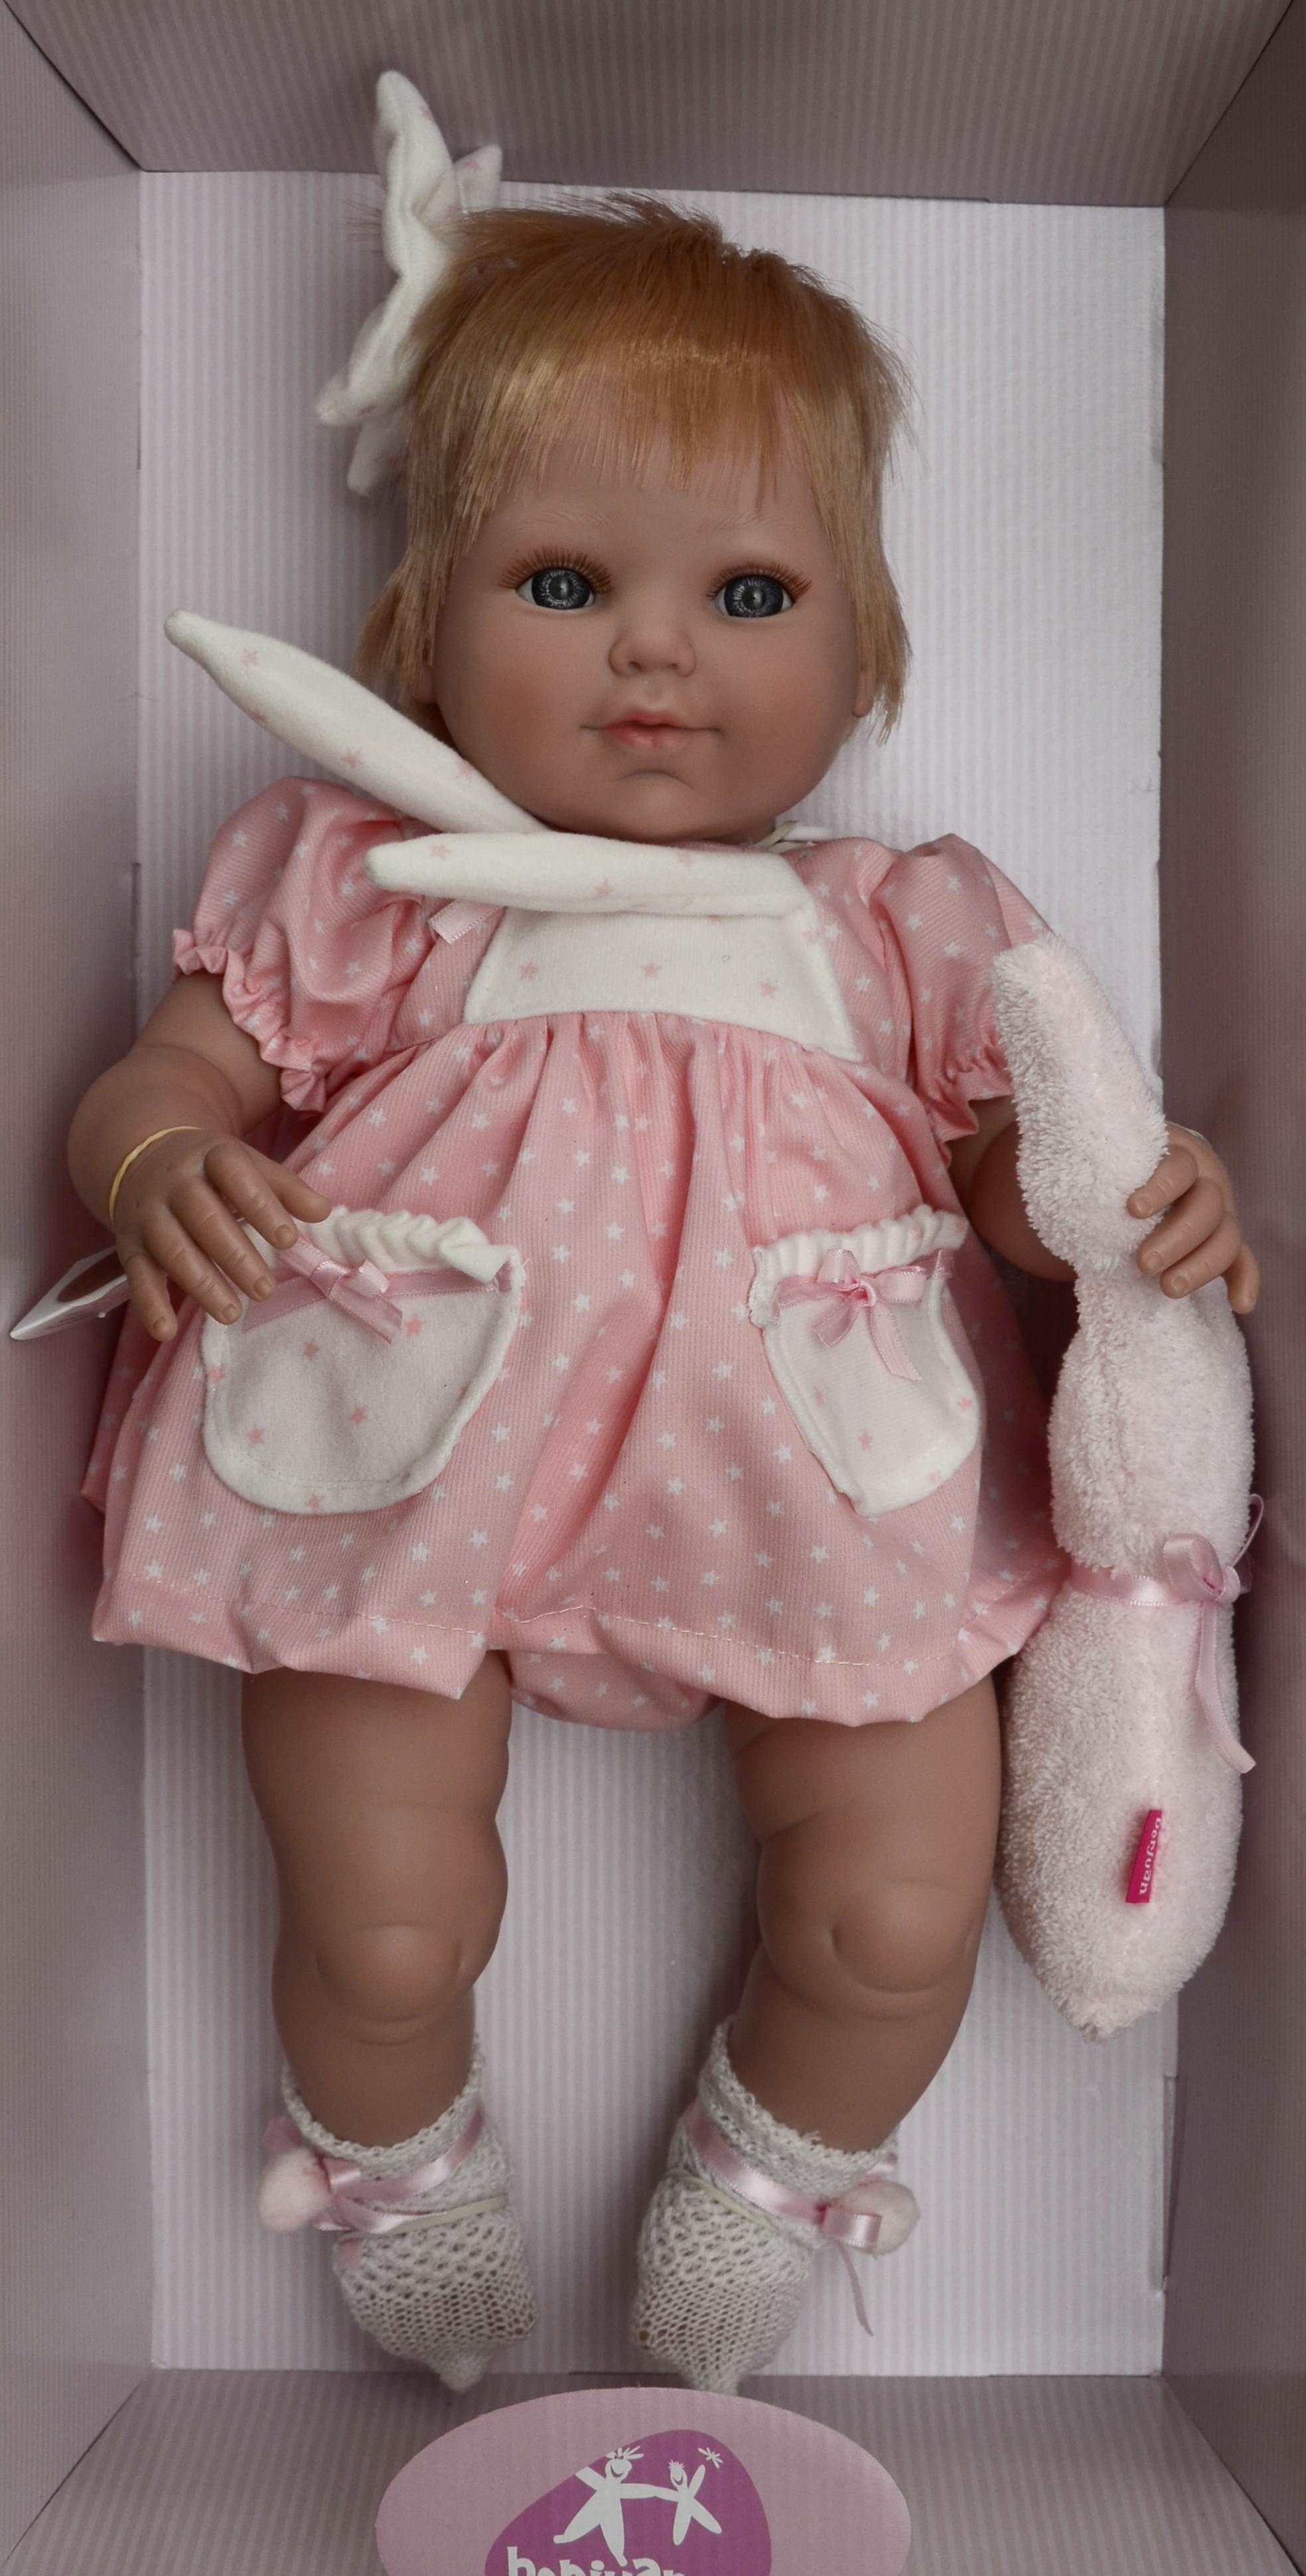 Realistická panenka Alice od firmy Berjuan ze Španělska